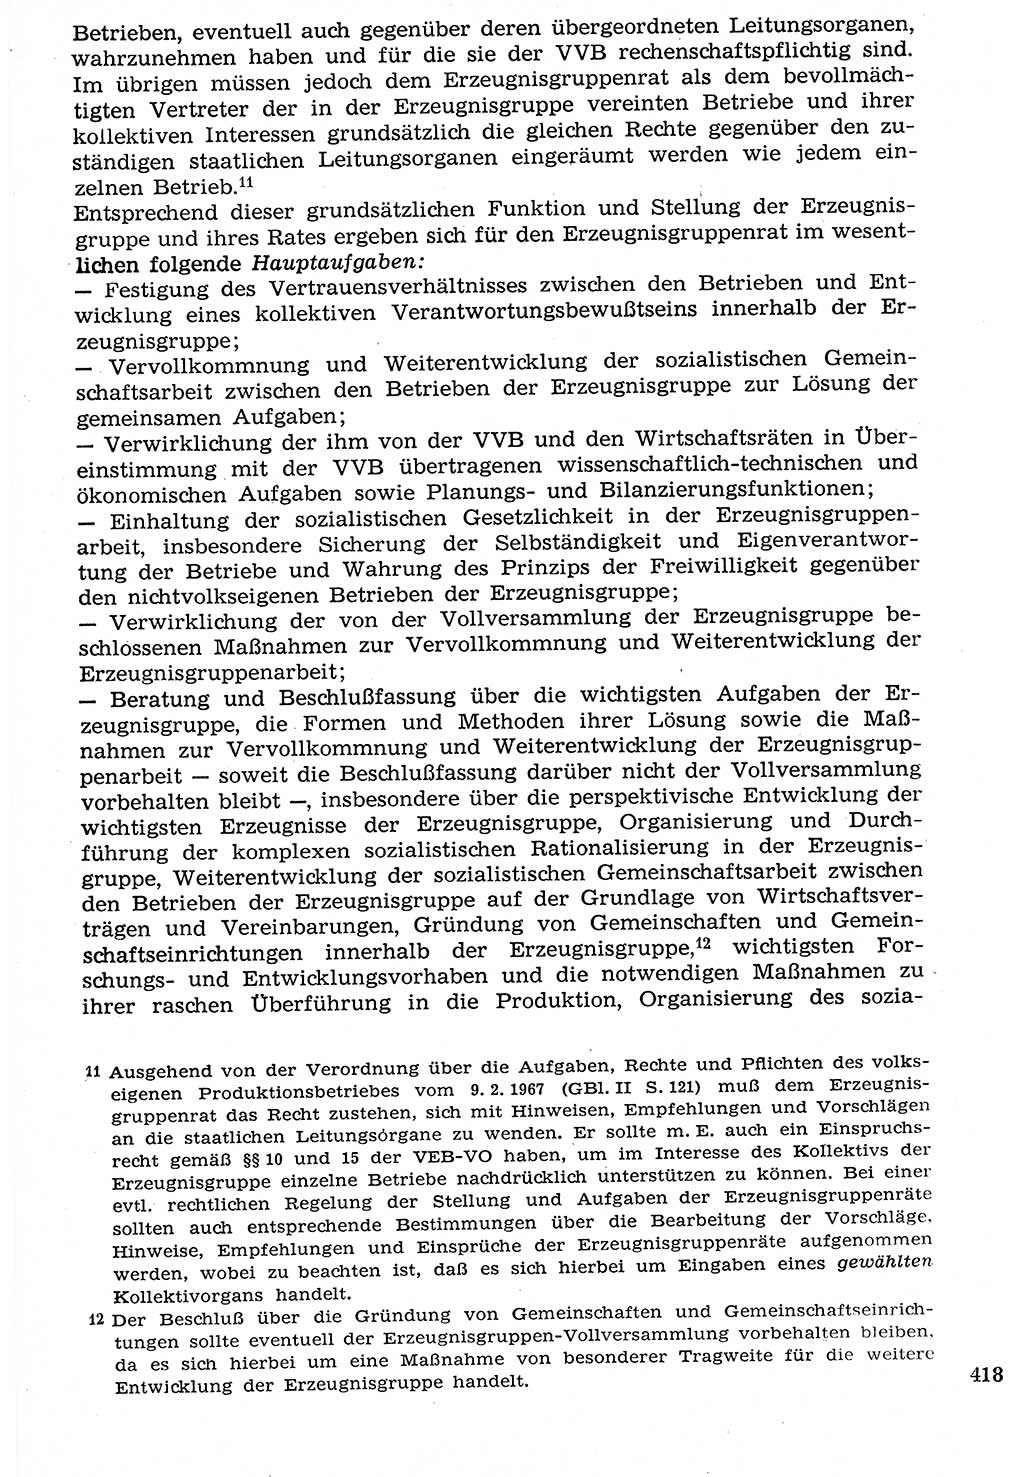 Staat und Recht (StuR), 17. Jahrgang [Deutsche Demokratische Republik (DDR)] 1968, Seite 418 (StuR DDR 1968, S. 418)